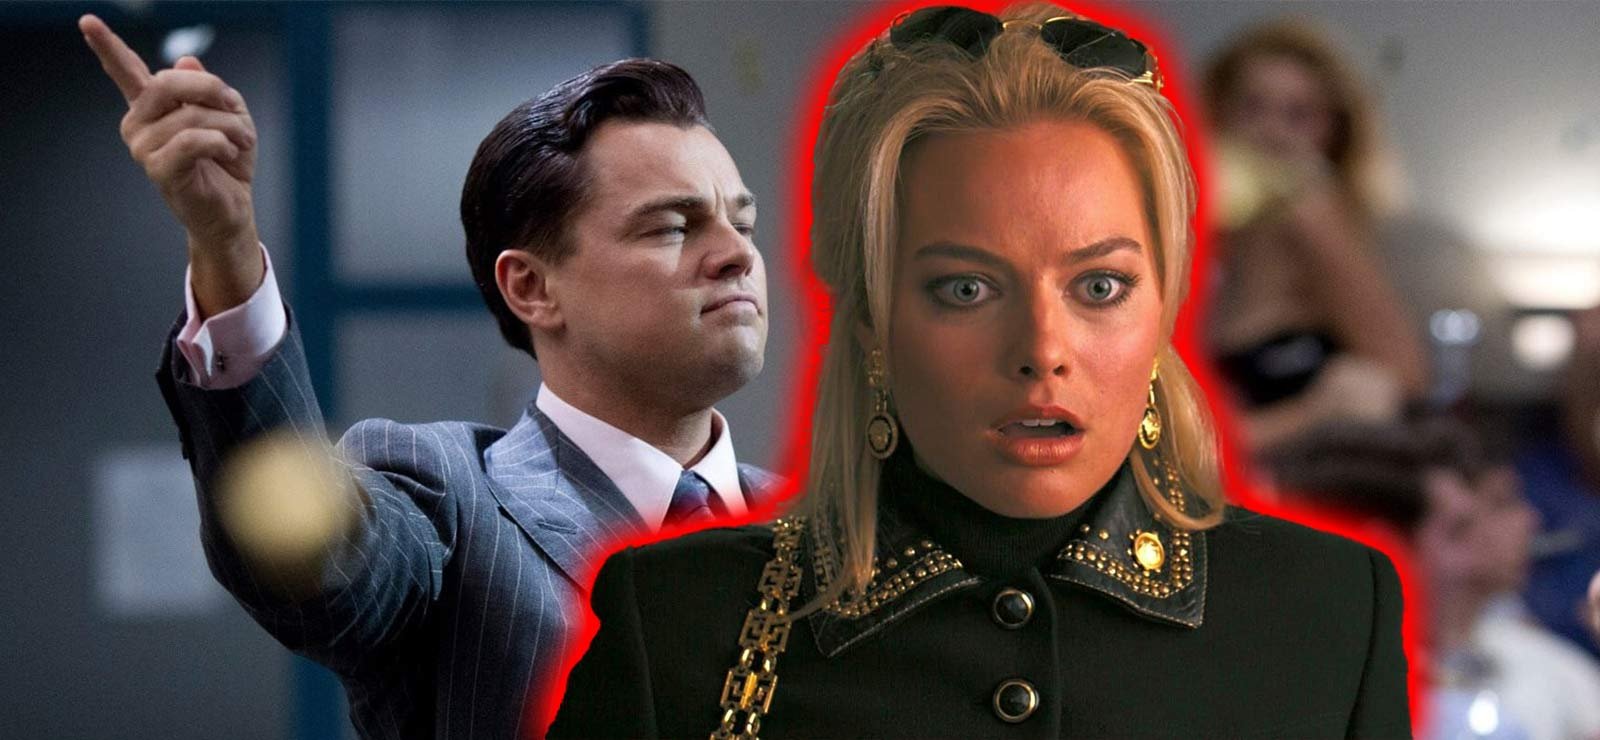 Margot Robbie slog Leonardo DiCaprio i ansiktet – blev världsstjärna